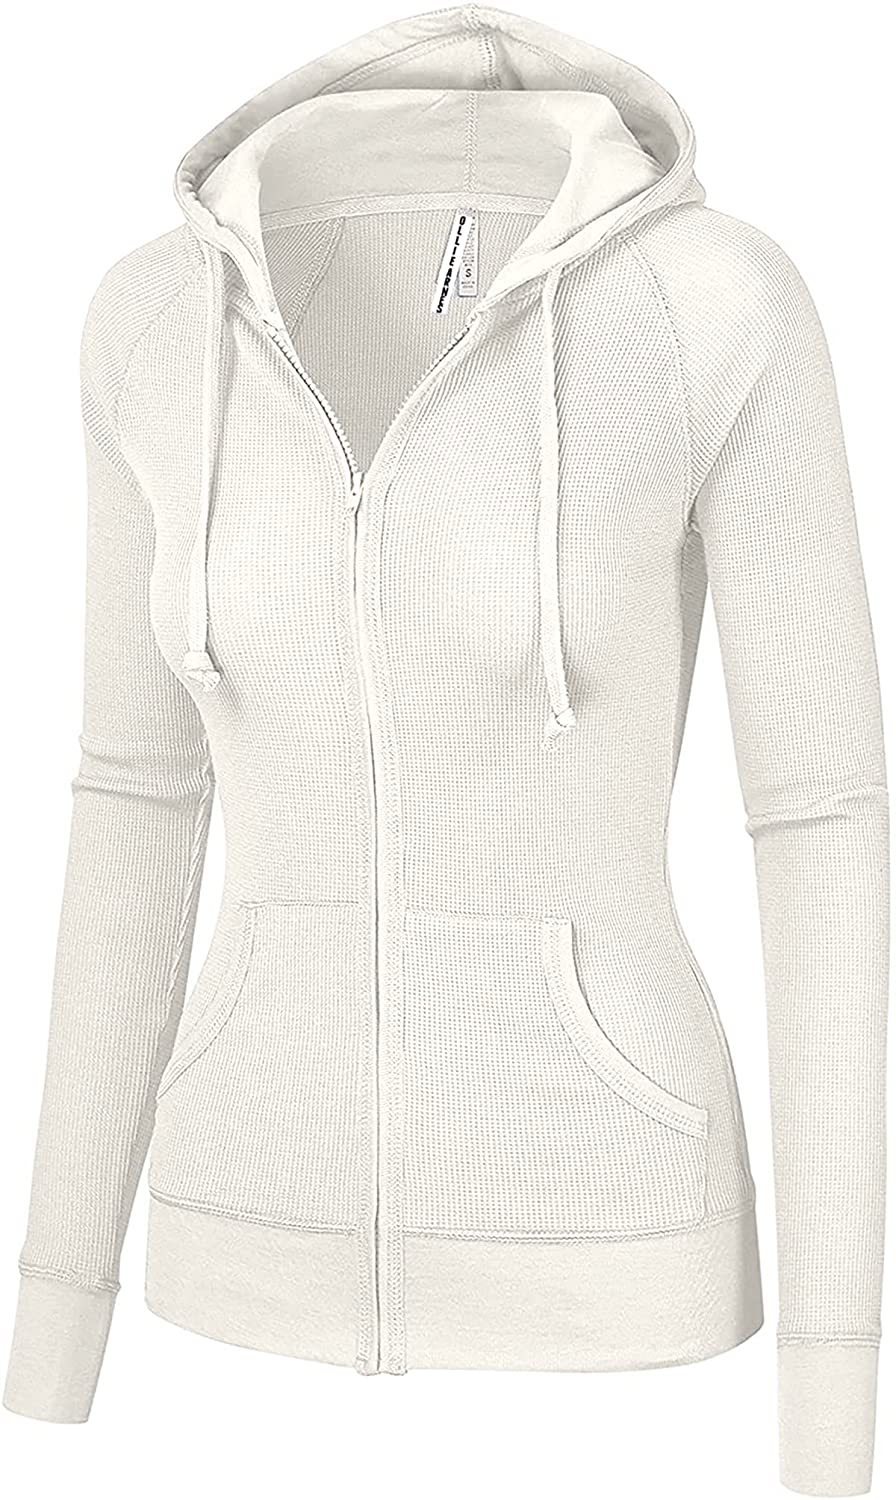 OLLIE ARNES Womens Thermal Long Hoodie Zip Up Jacket Sweater Tops 